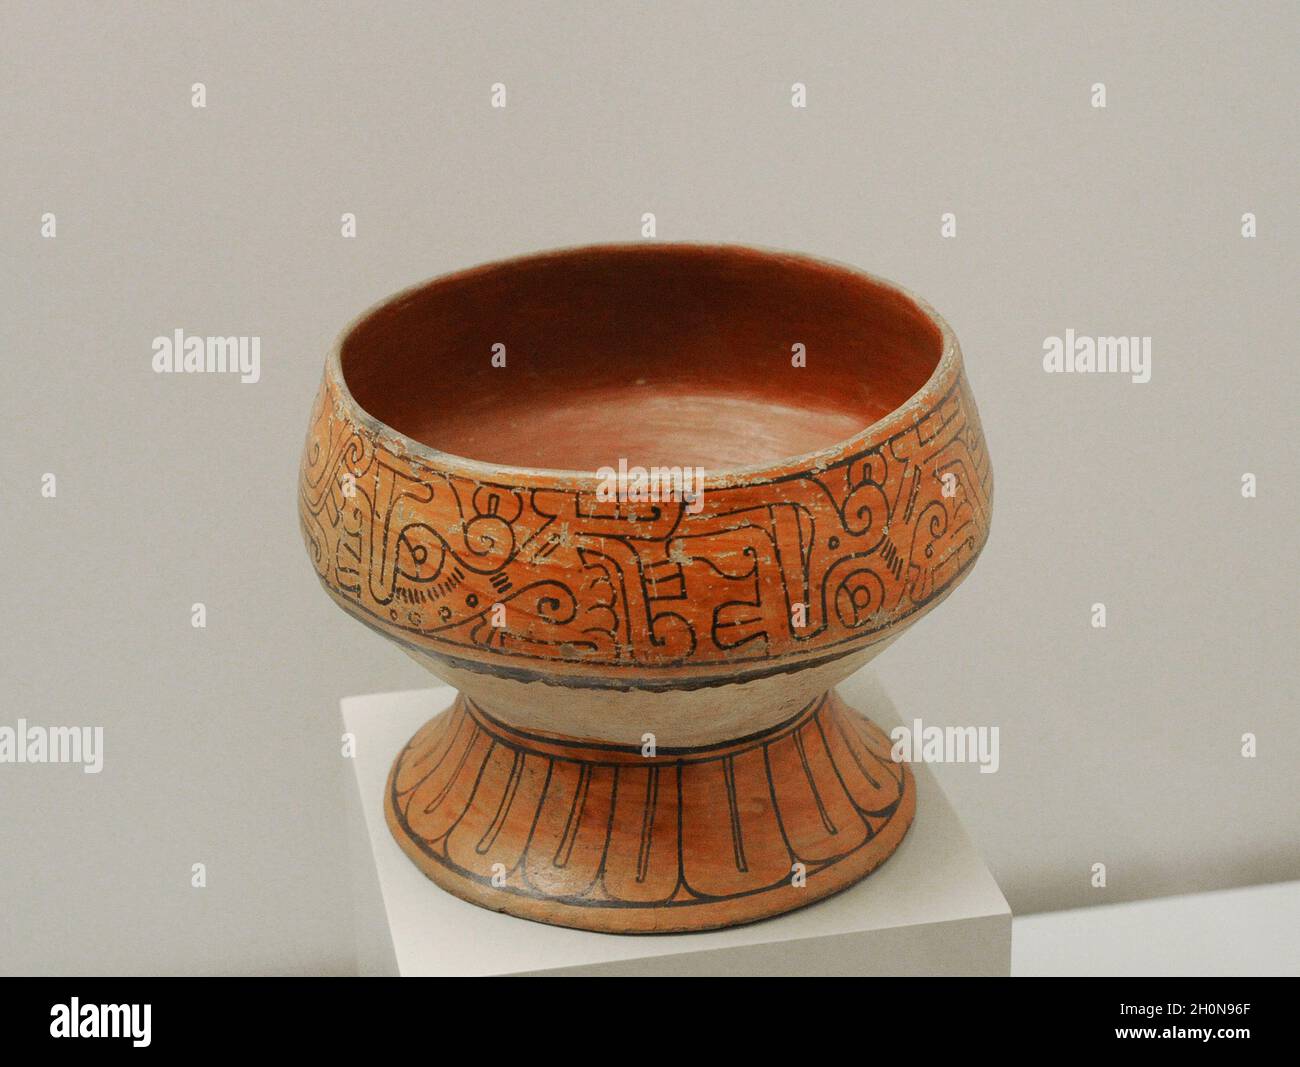 Tazza con decorazione schematica e geometrica. Ceramica dipinta. Stile Mixtec-Puebla. Periodo tardo-postclassico (1350-1500 d.C.). Messico. Museo dell'Ameri Foto Stock